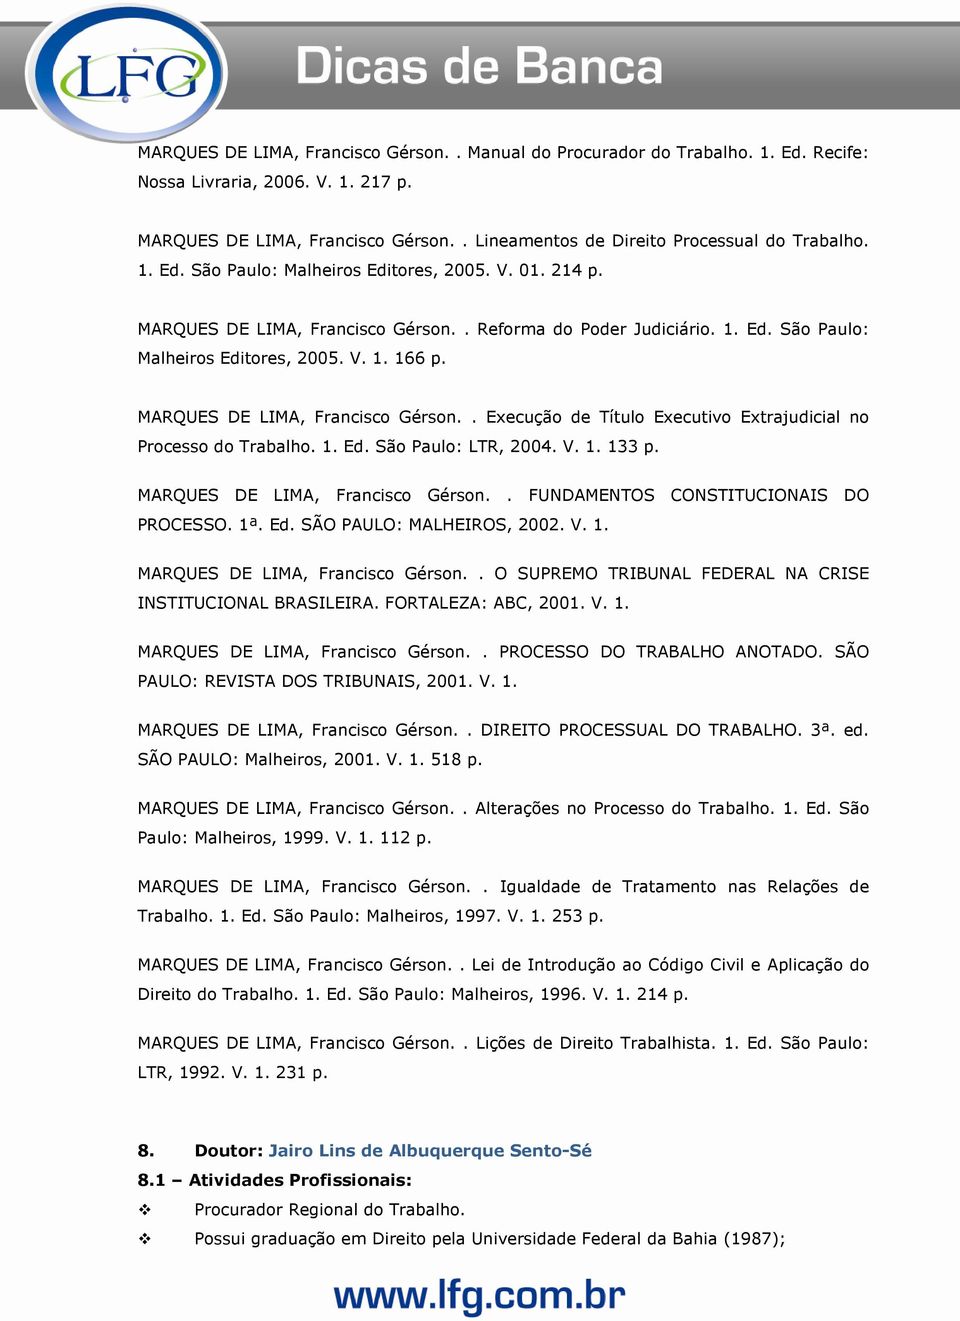 MARQUES DE LIMA, Francisco Gérson.. Execução de Título Executivo Extrajudicial no Processo do Trabalho. 1. Ed. São Paulo: LTR, 2004. V. 1. 133 p. MARQUES DE LIMA, Francisco Gérson.